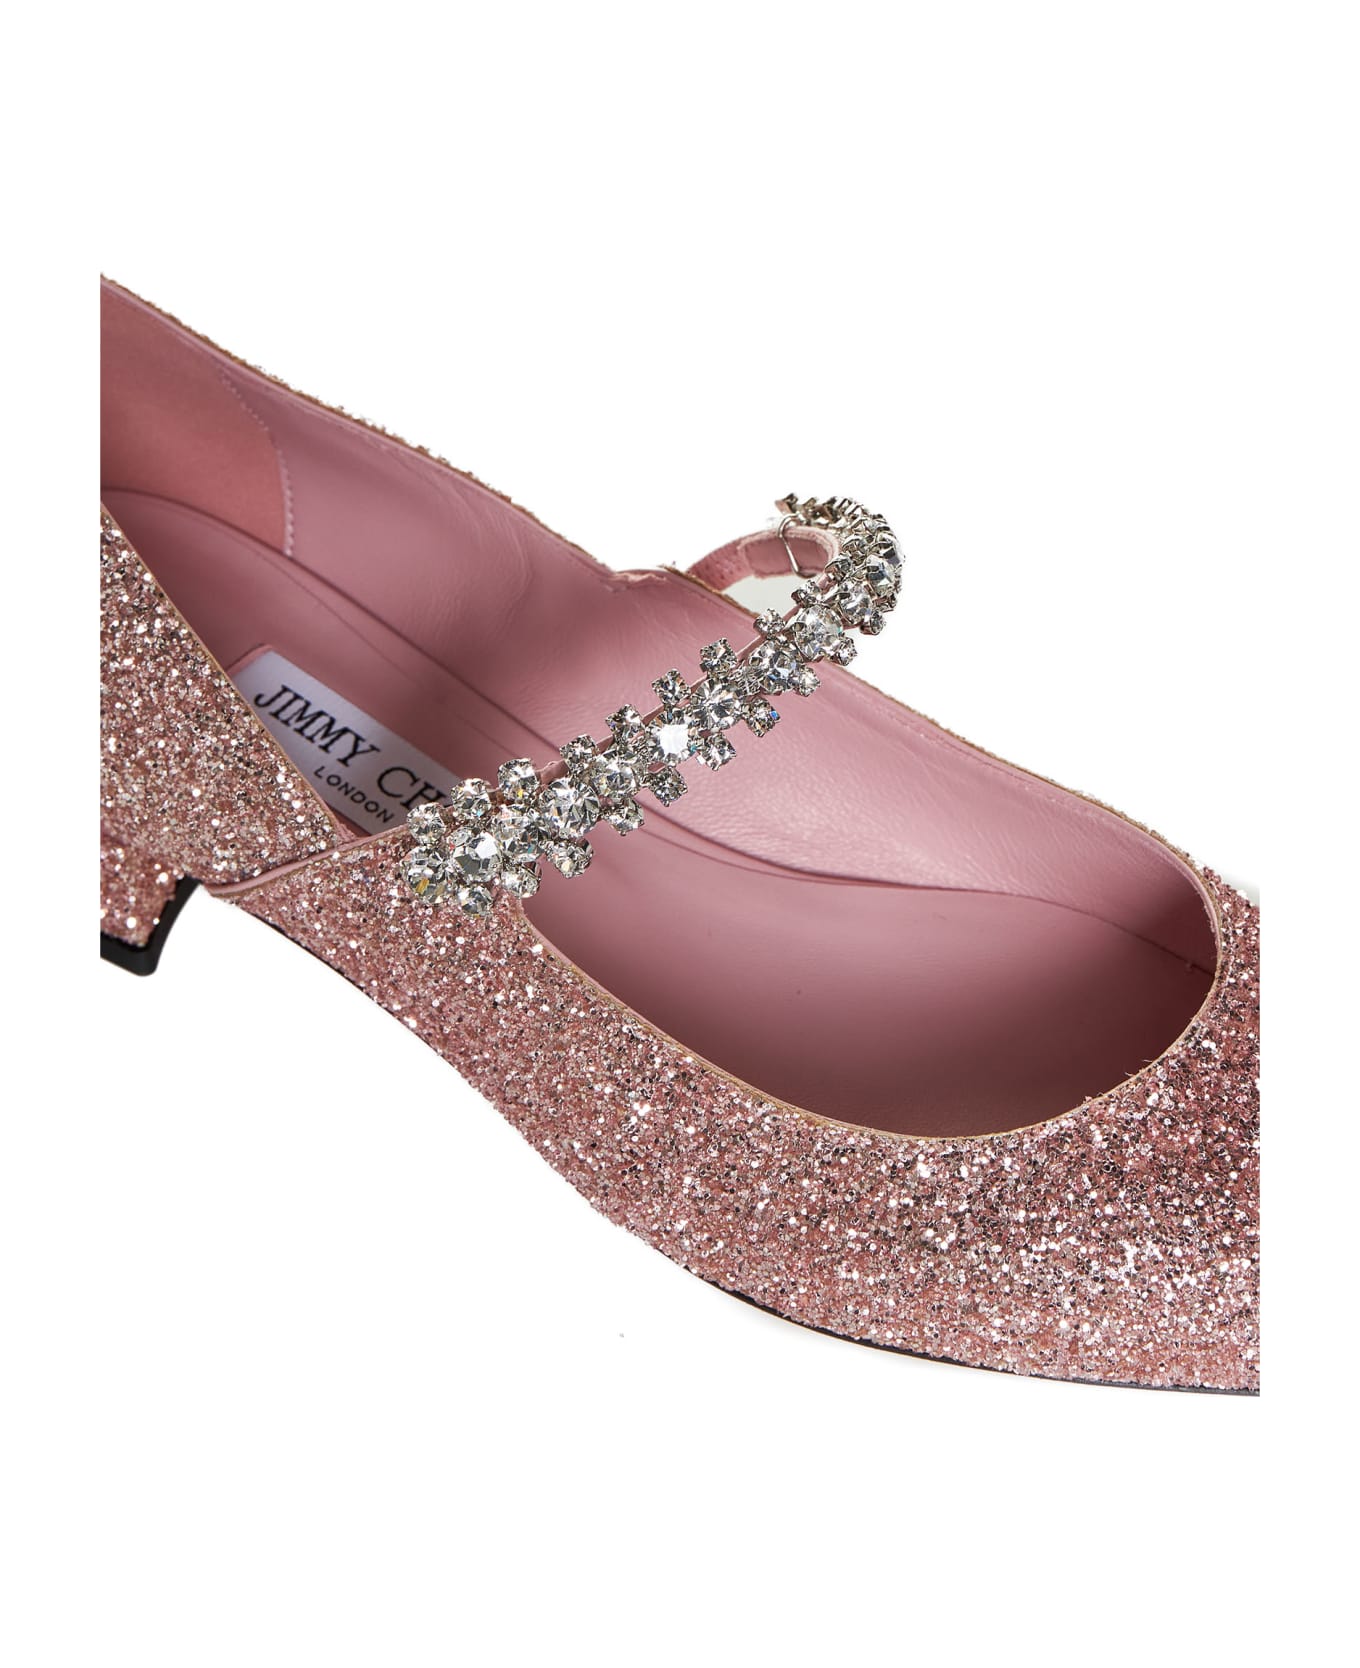 Jimmy Choo Flat Shoes - Pink フラットシューズ